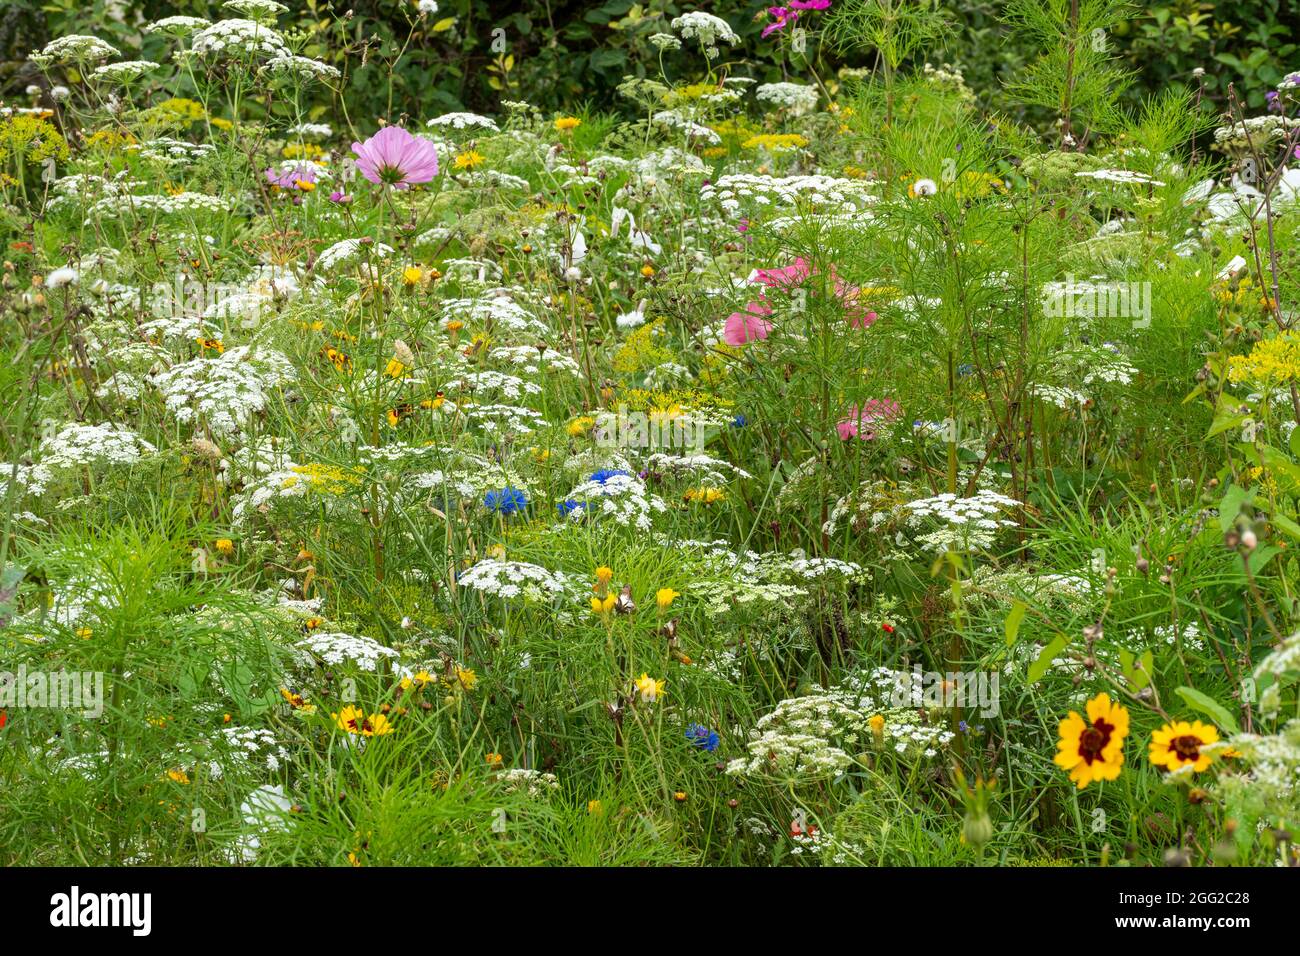 Giardino di fiori selvatici colorati con fiori che sono buone fonti nettare per impollinare insetti come api e farfalle, estate, Regno Unito Foto Stock